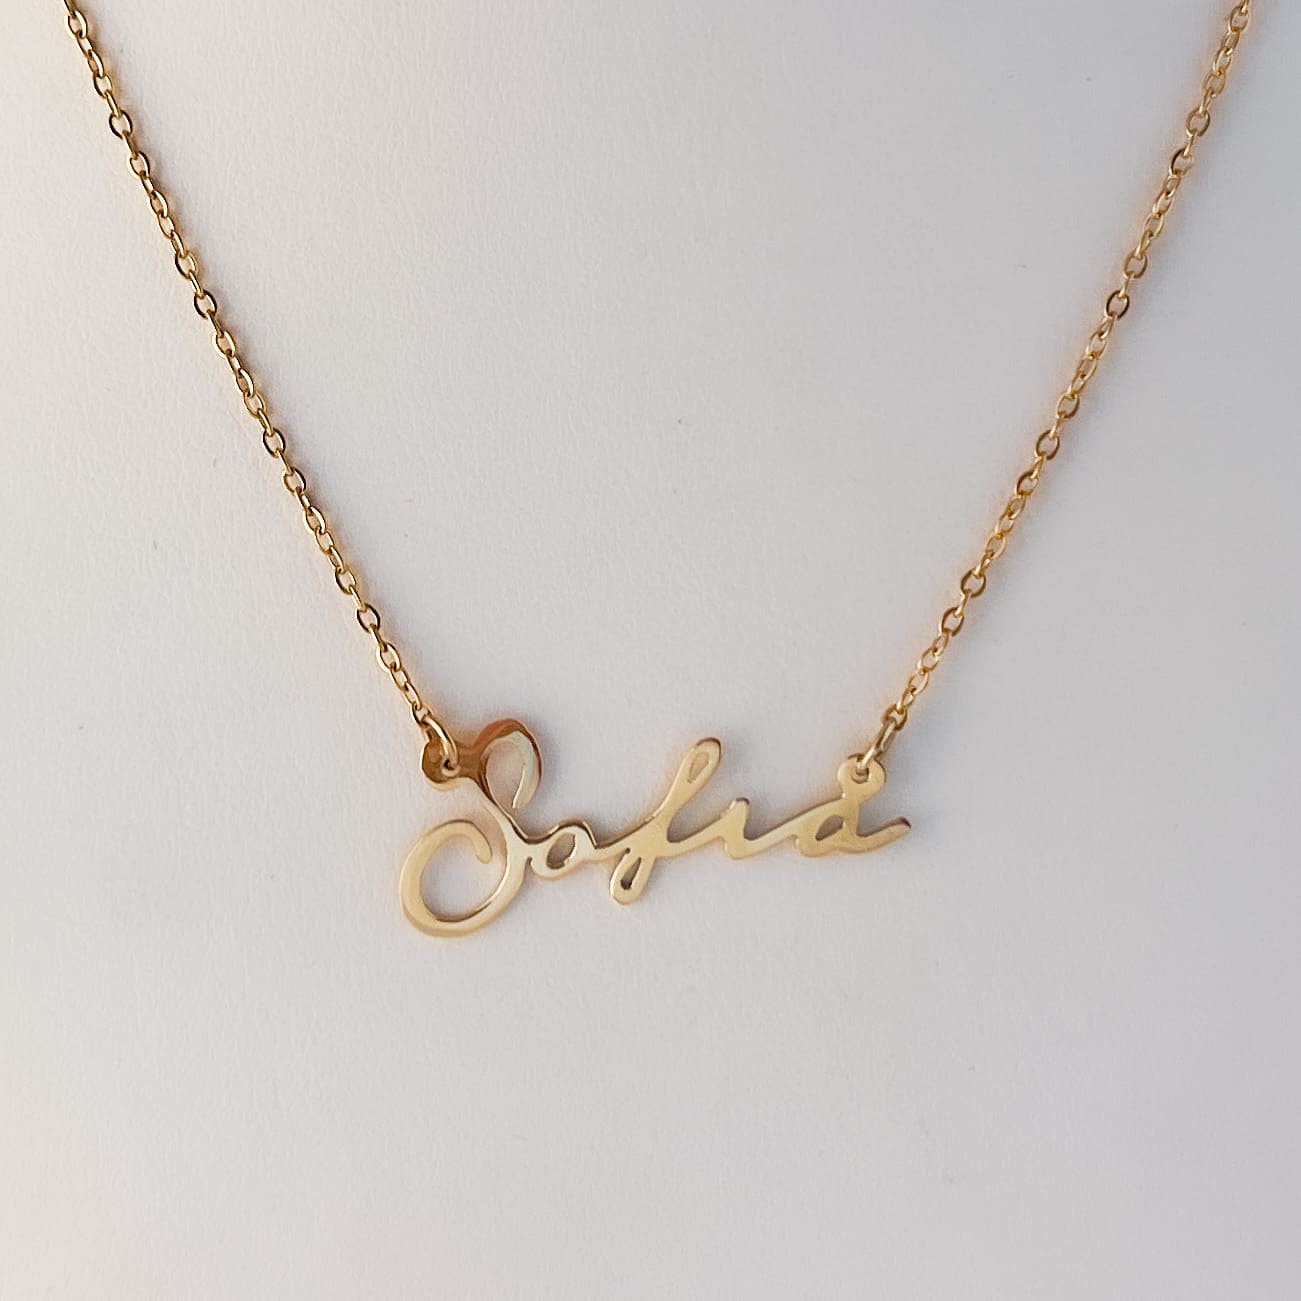 Collar personalizado de nombre en chapa de oro cadena de acero